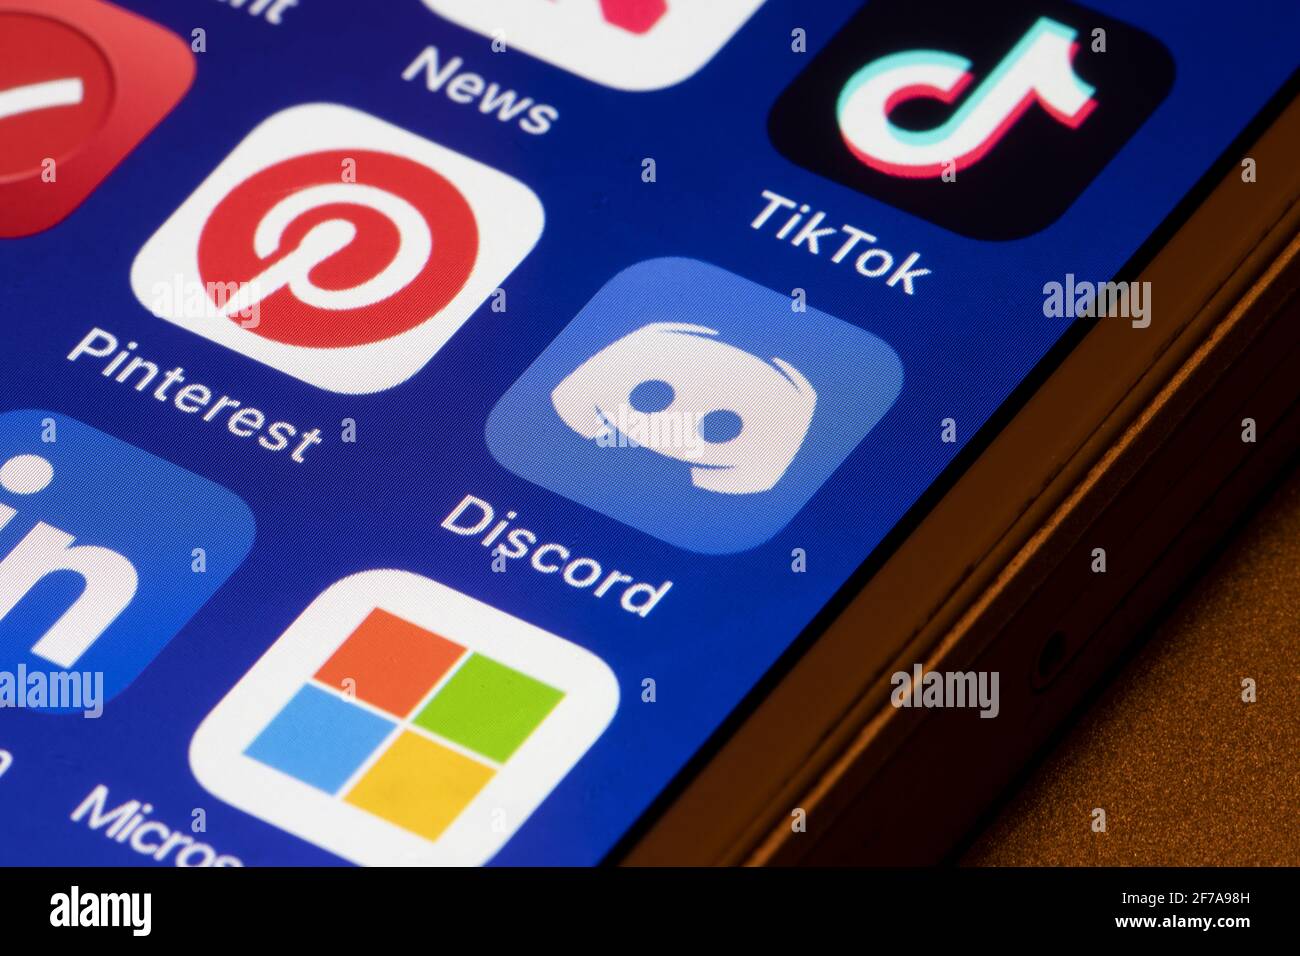 L'icône de l'application Discordon s'affiche sur un iPhone. Après TikTok et Pinterest, Microsoft est maintenant en pourparlers pour acquérir la discorde, une communauté de chat de jeux vidéo. Banque D'Images